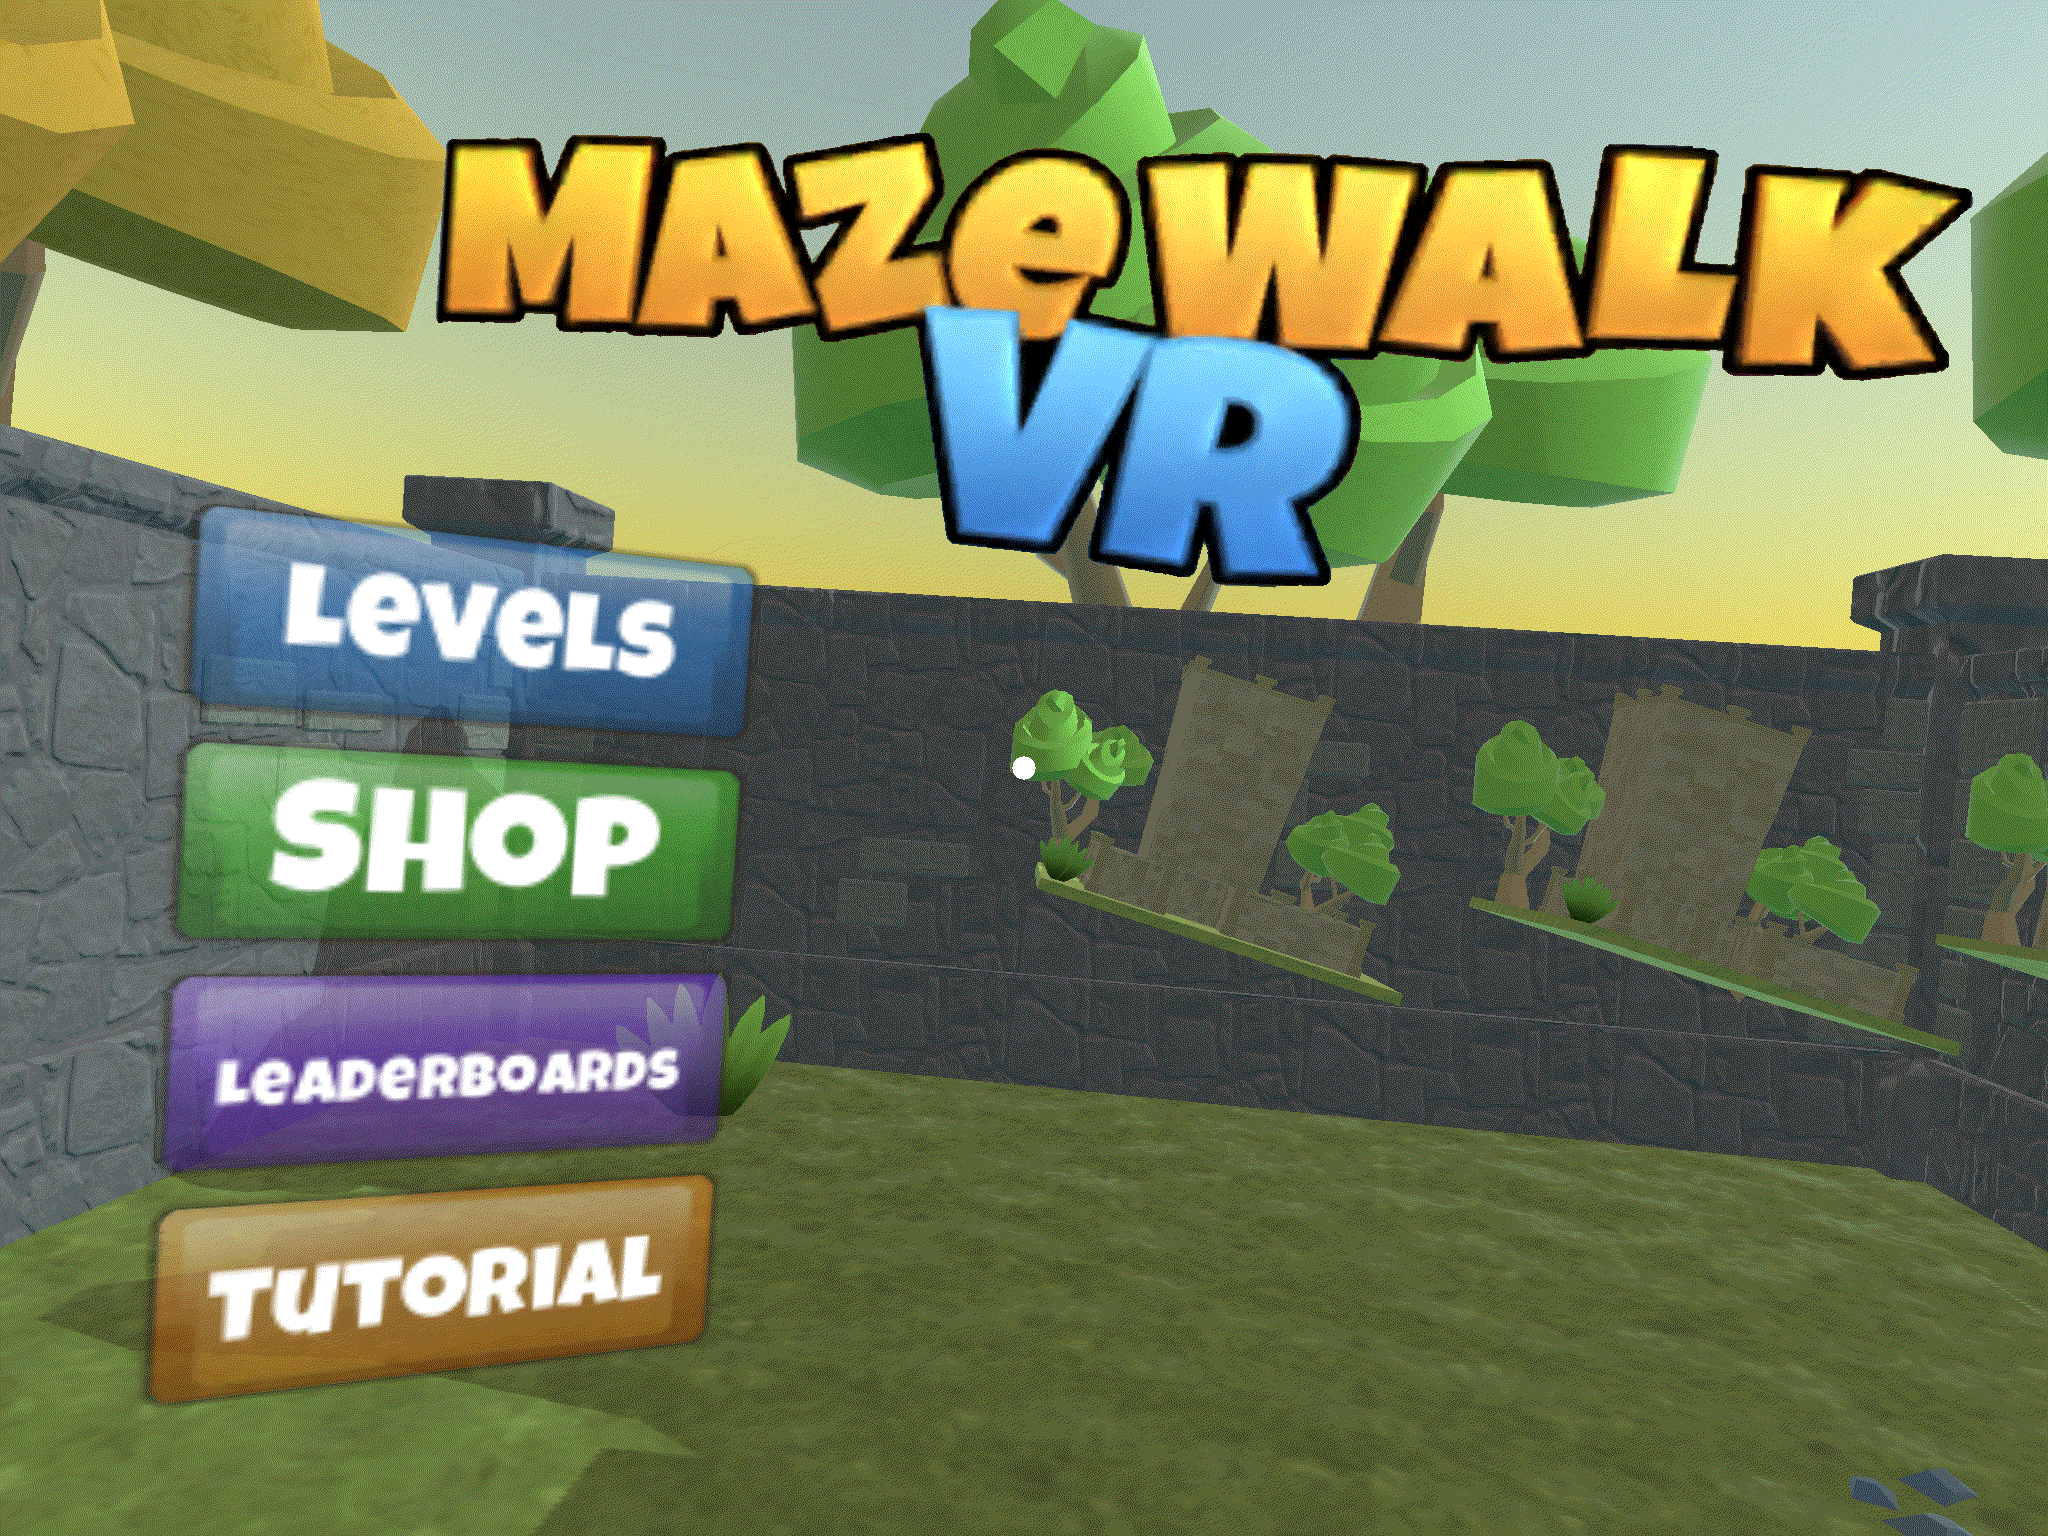 VR maze walk